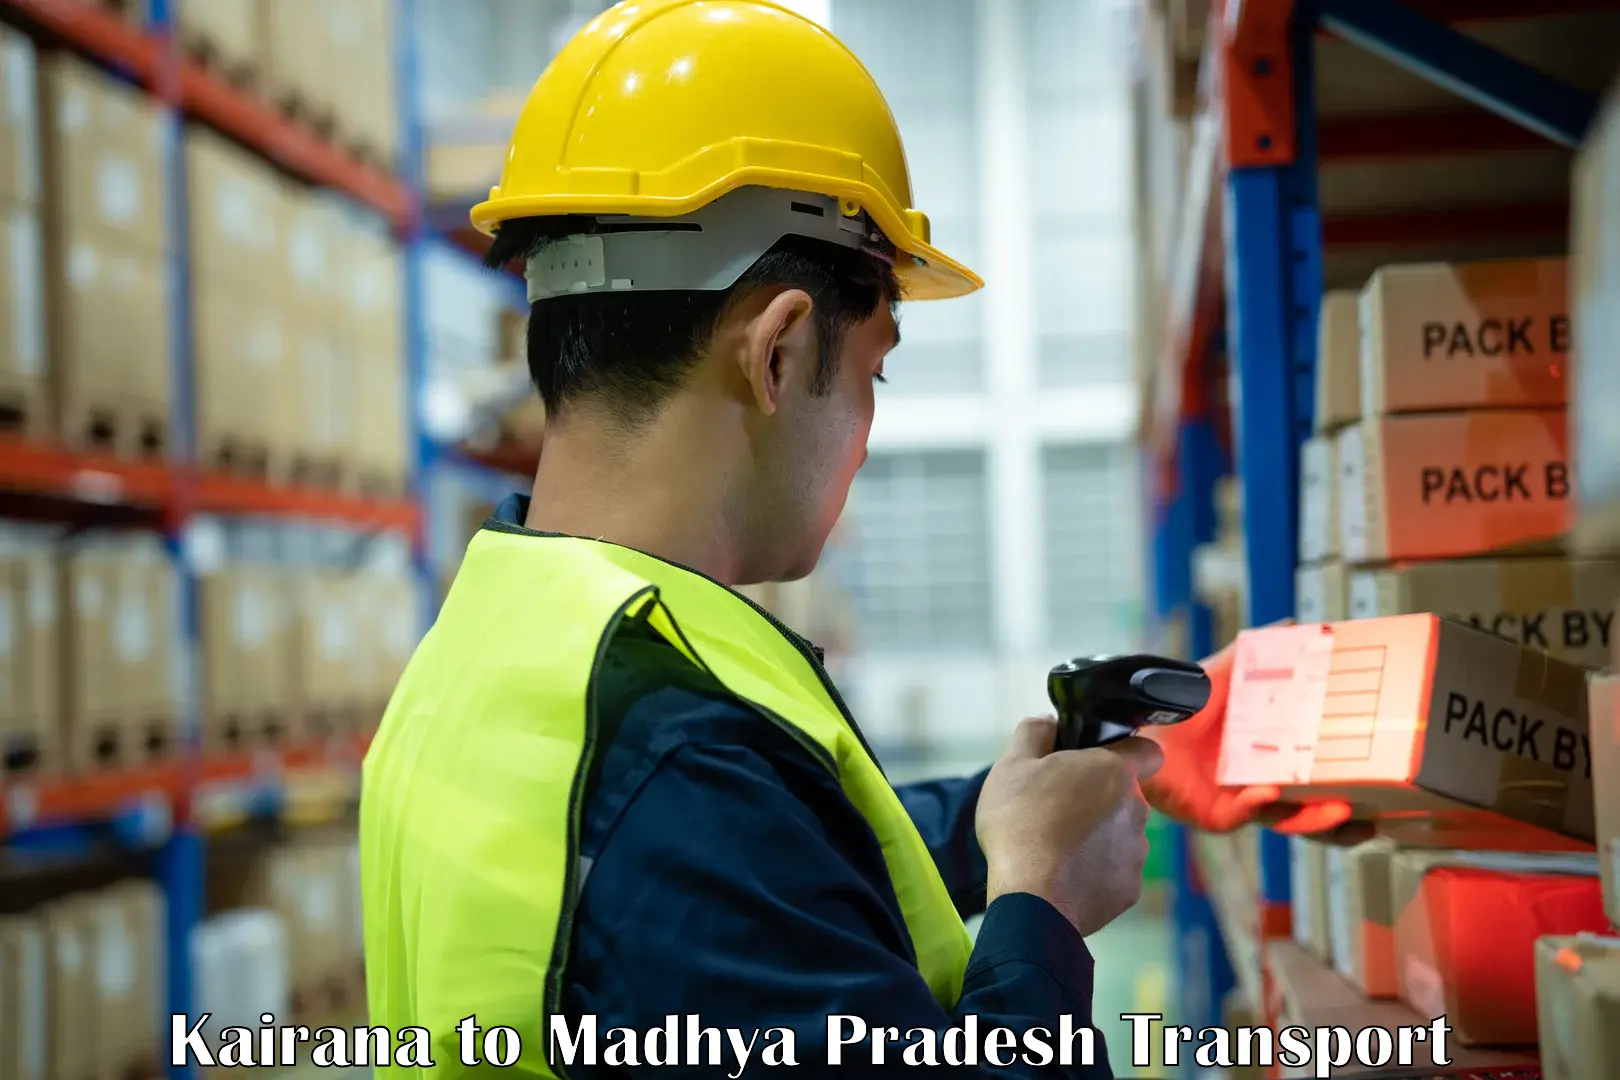 Truck transport companies in India Kairana to Pandhurna